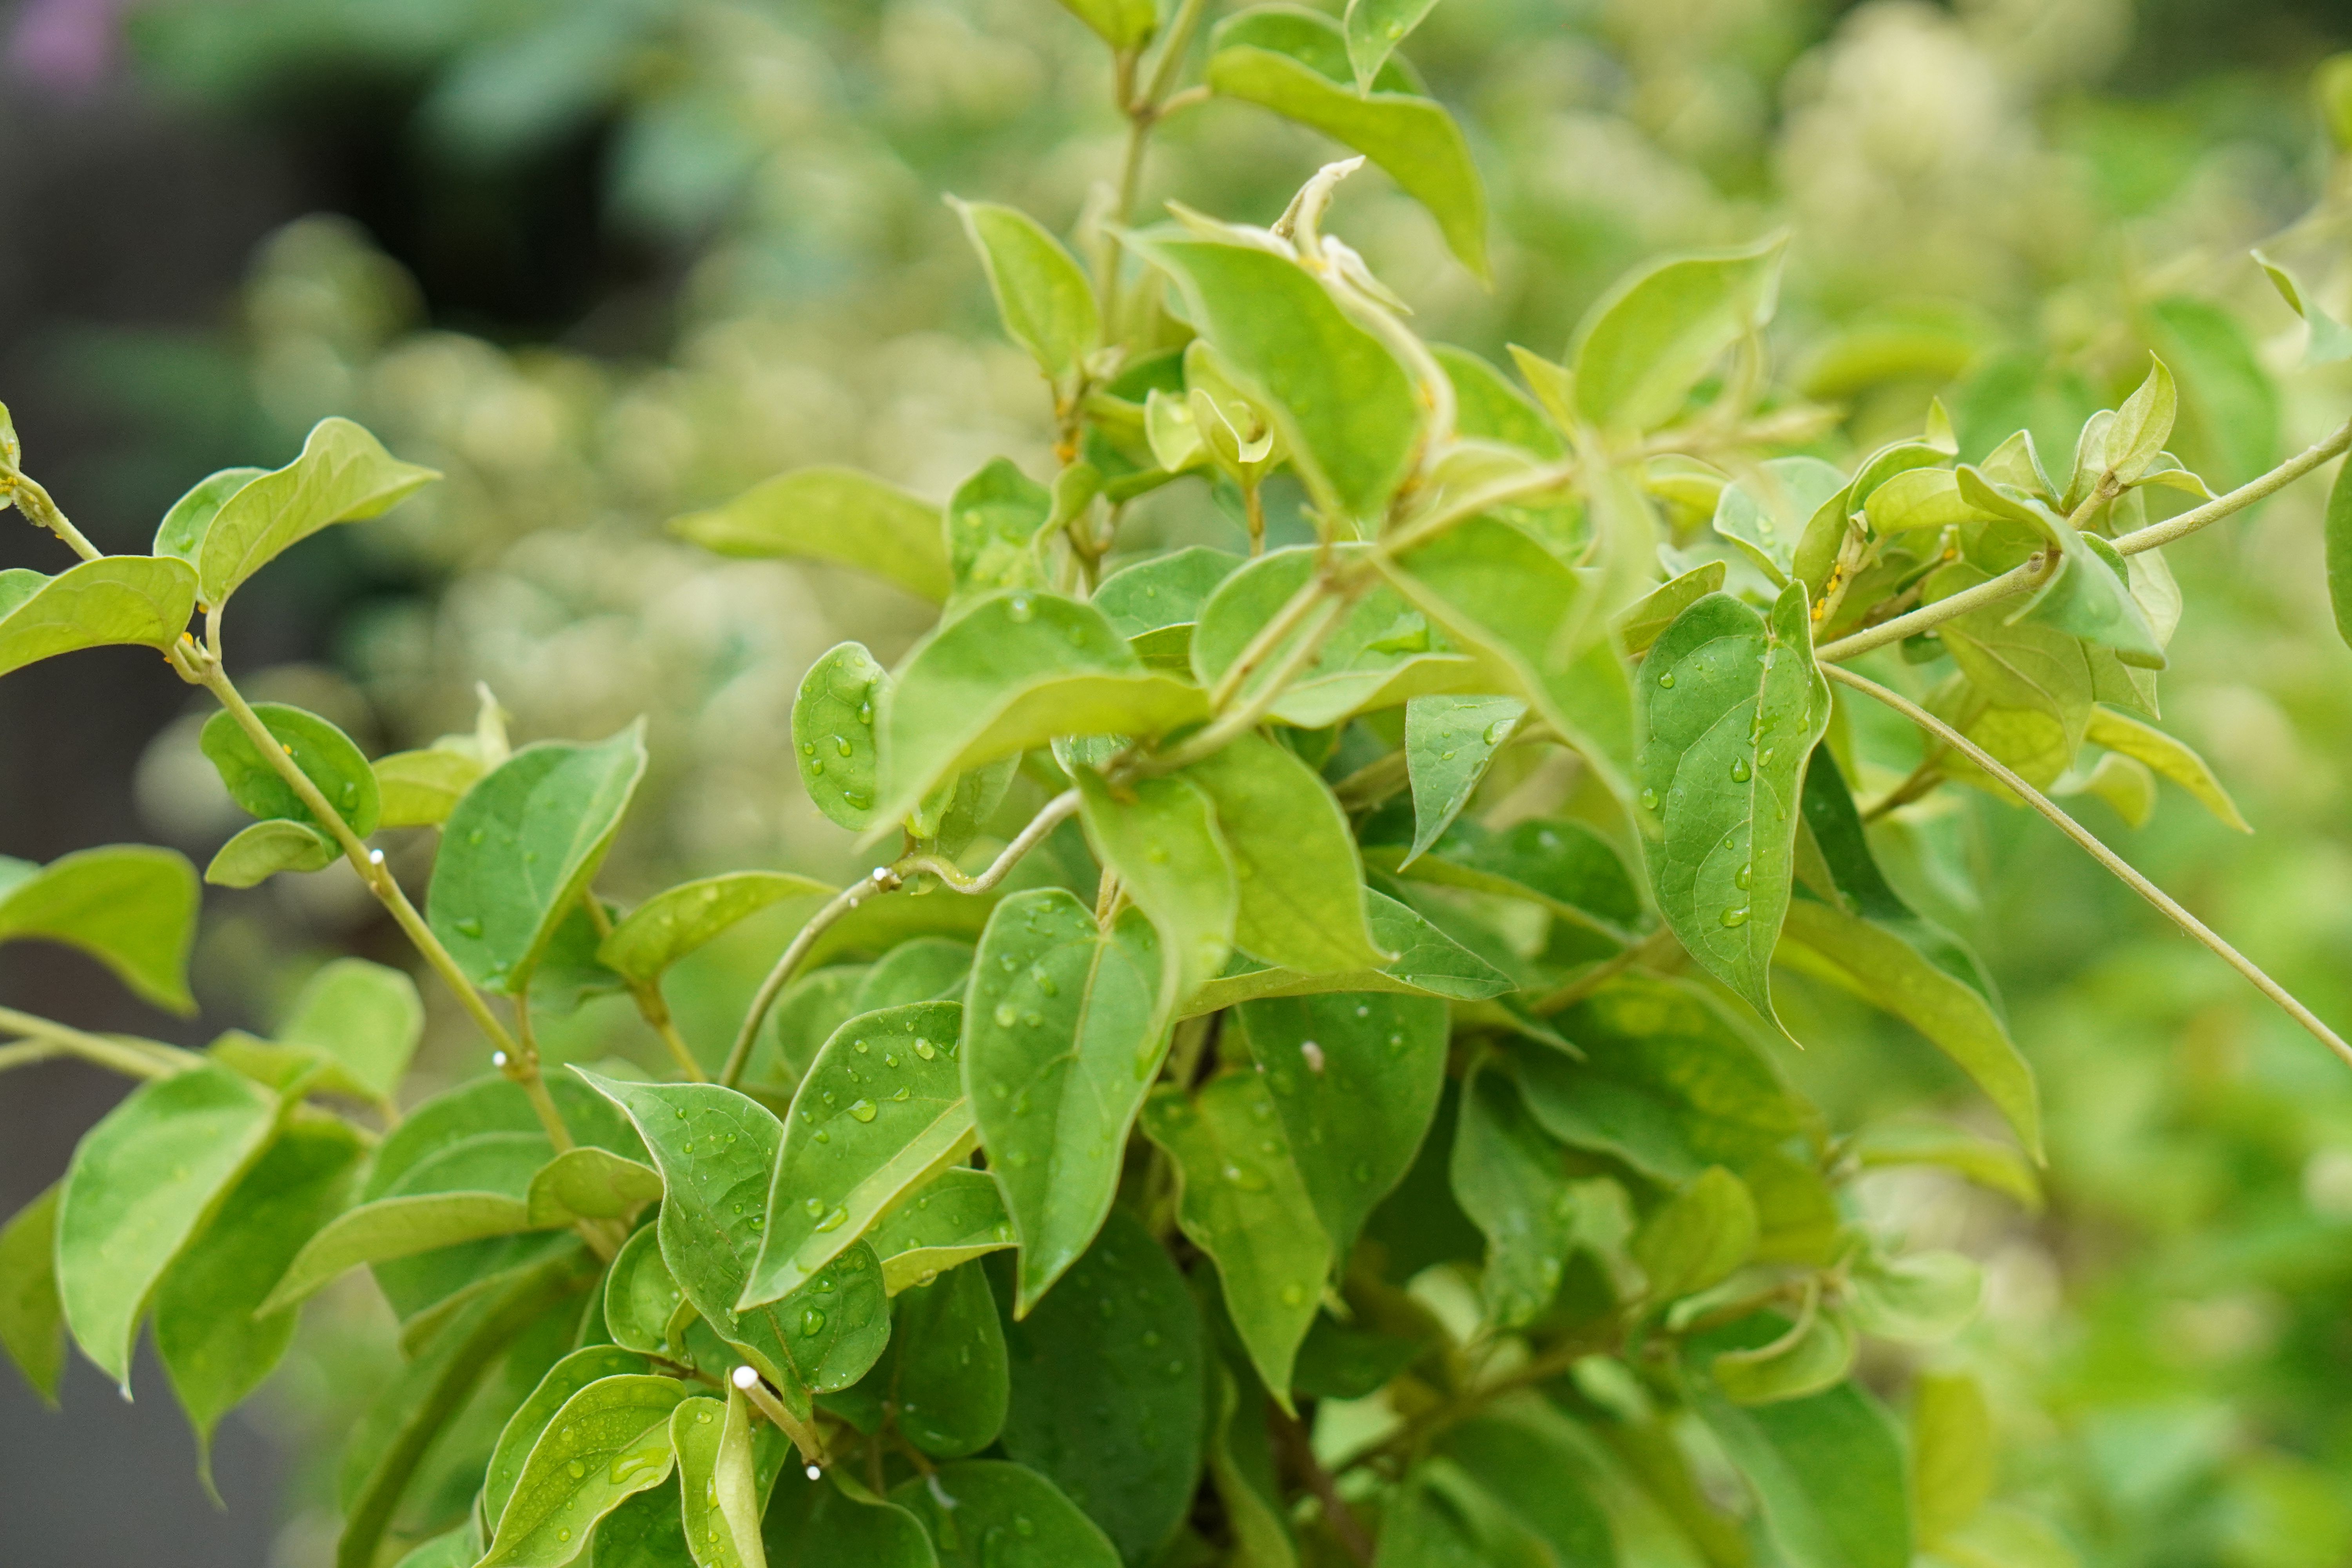 Bei Heißhungerattacken kann die Pflanze Gymnema helfen, die als Nahrungsergänzungsmittel erhältlich ist